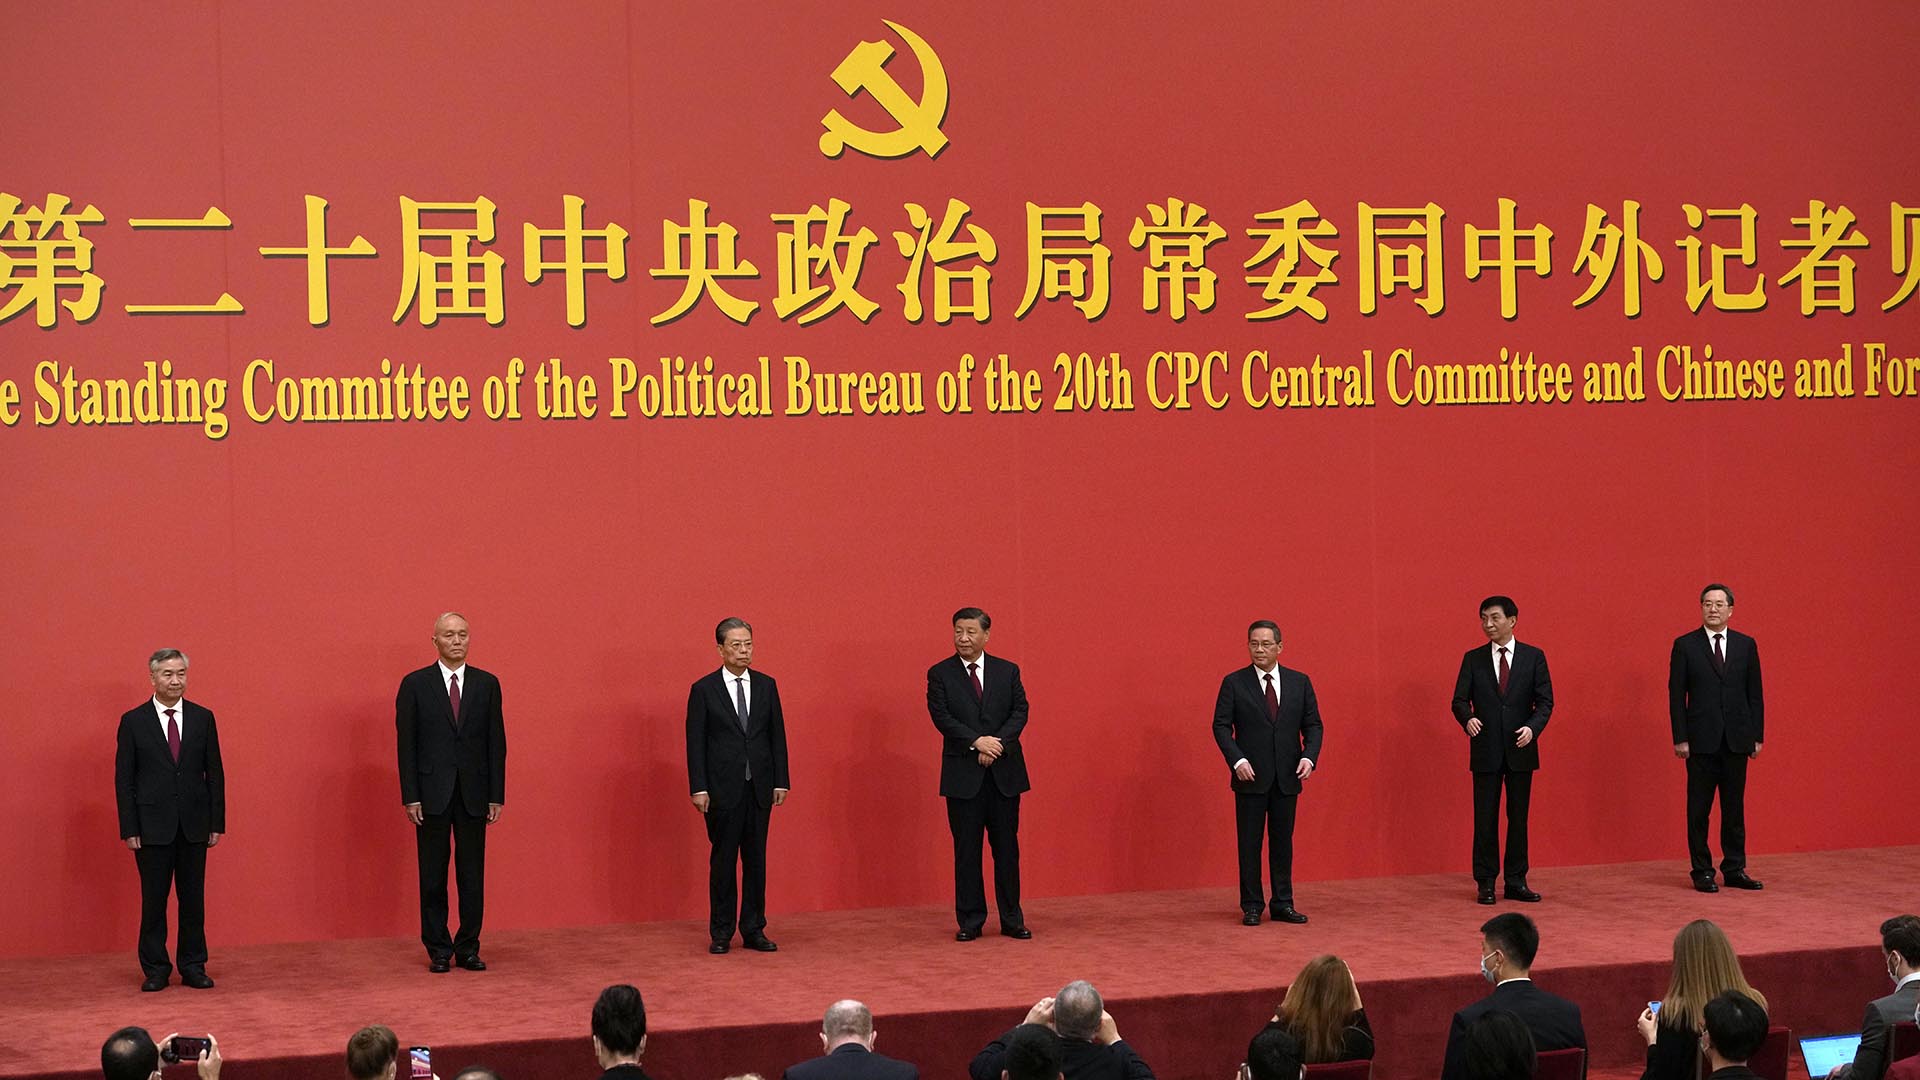 Los nuevos miembros del Comité Permanente del Politburó, desde la izquierda, Li Xi, Cai Qi, Zhao Leji, el presidente Xi Jinping, Li Qiang, Wang Huning y Ding Xuexiang son presentados en el Gran Palacio del Pueblo en Beijing. (AP Photo/Ng Han Guan)

